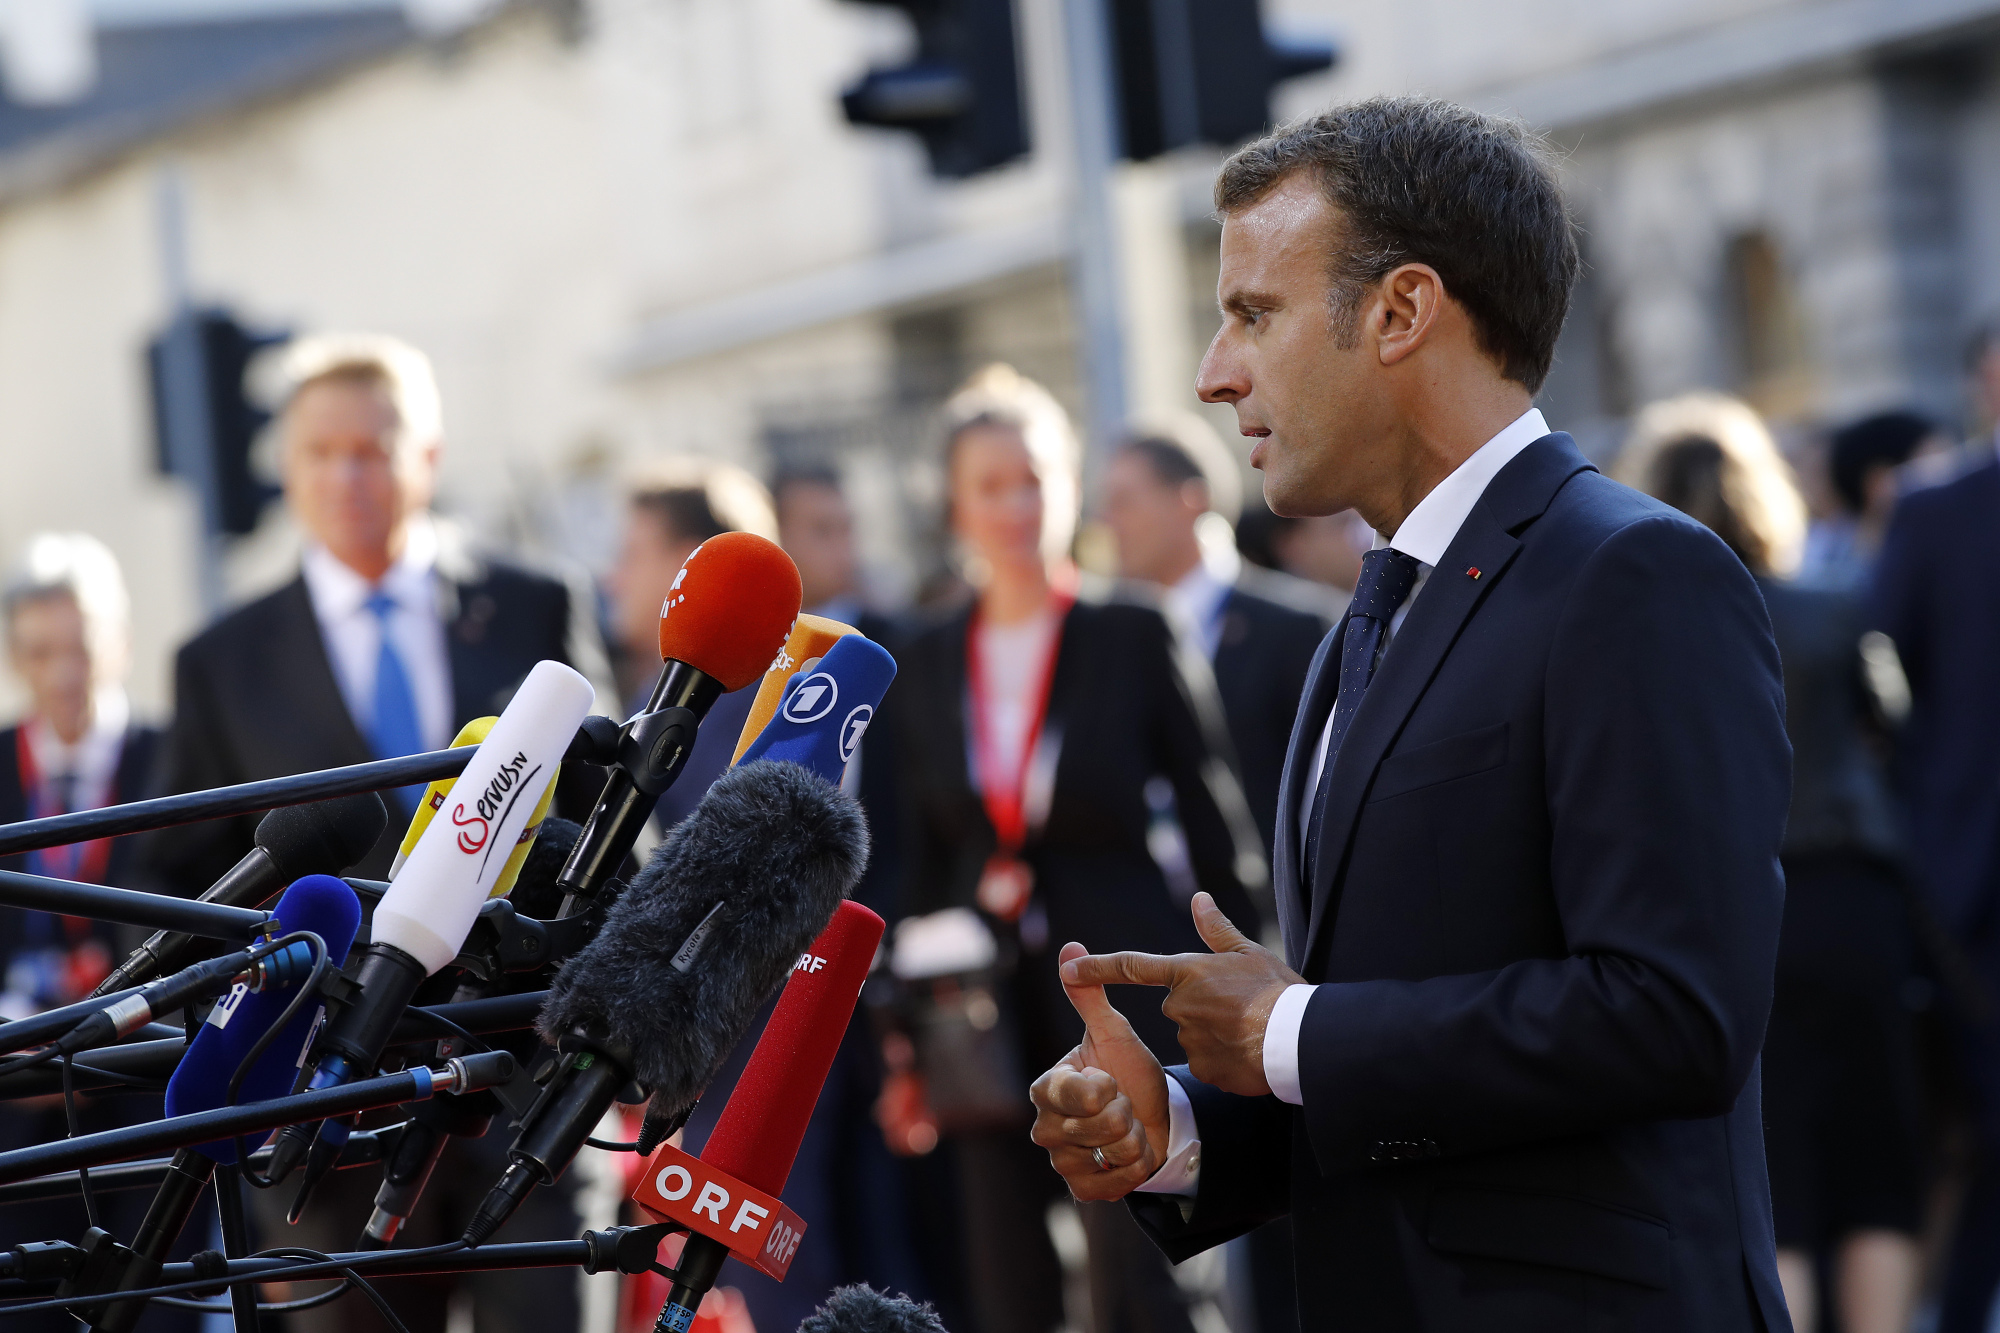 Emmanuel Macron, France's president, speaks to reporters ahead of an informal meeting of European Union&nbsp;leaders in Salzburg, Austria, on Sept. 20, 2018.